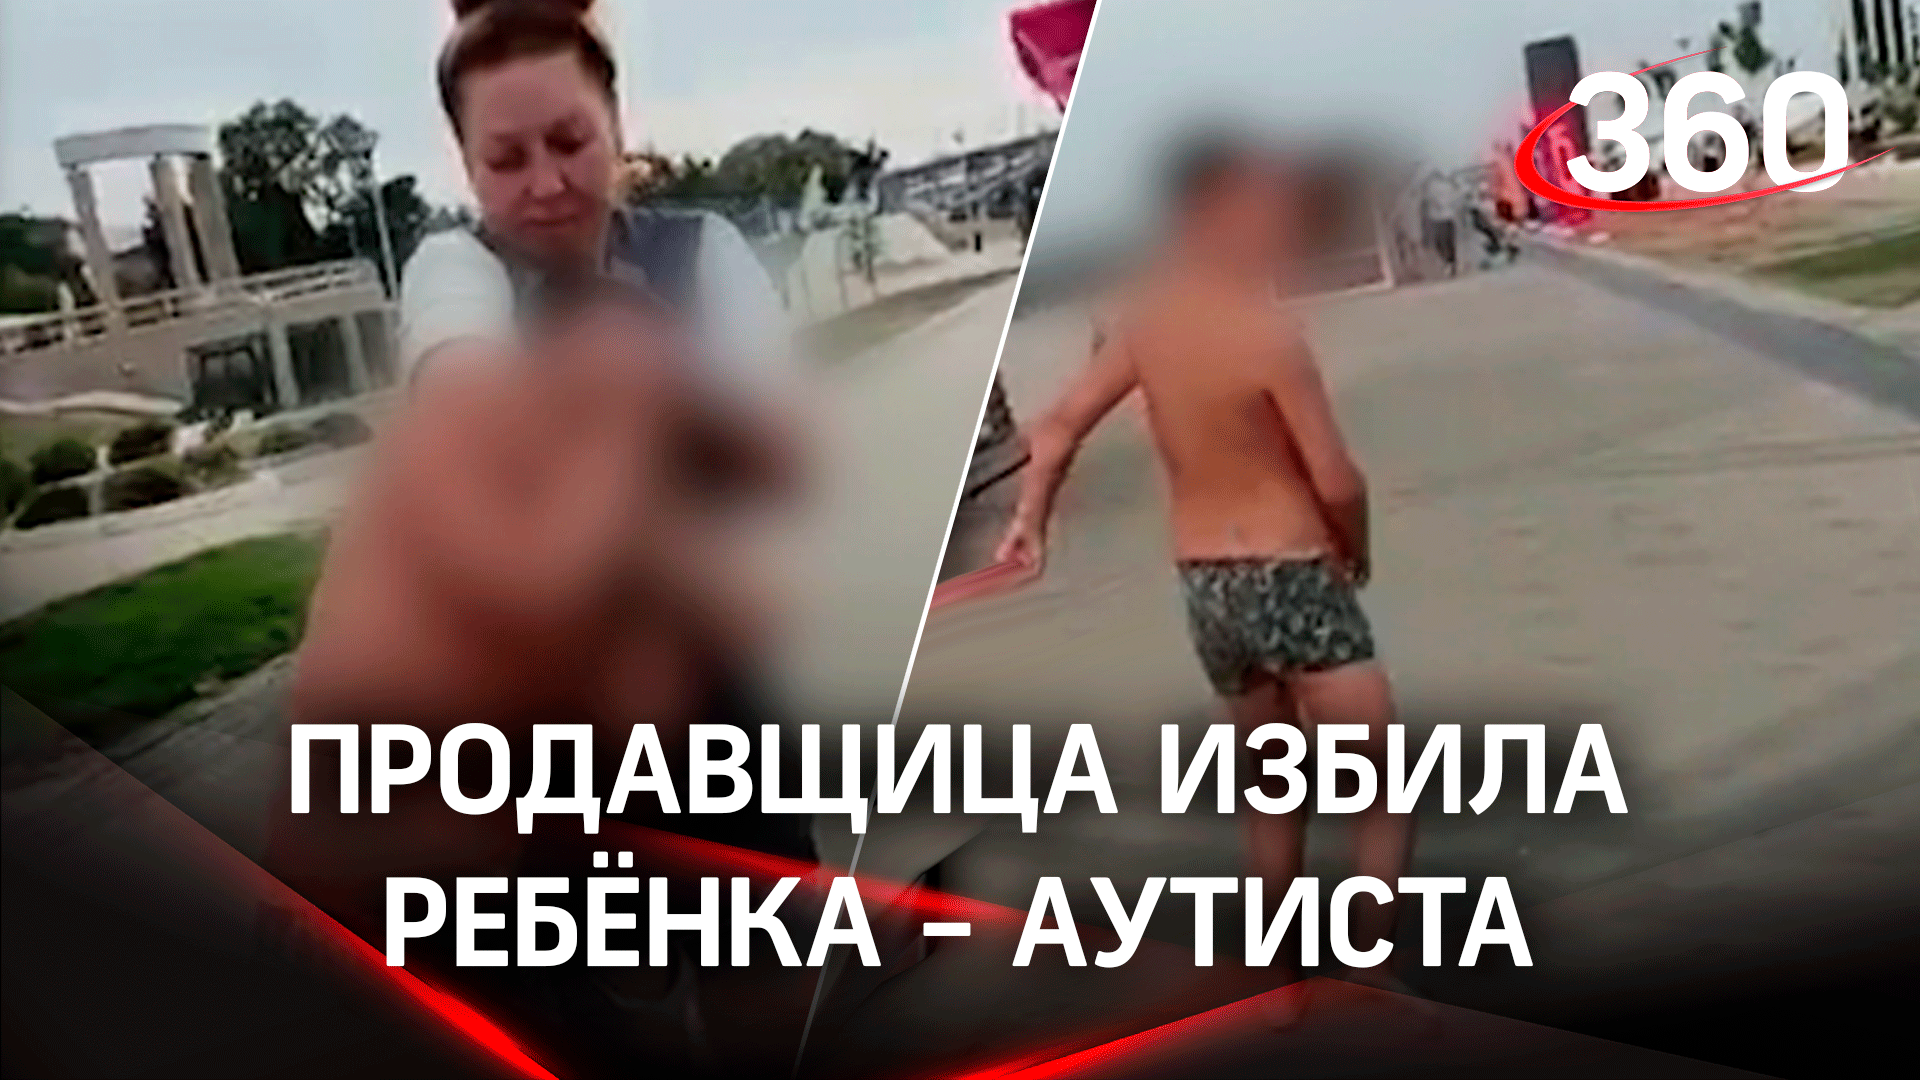 В Нижнем Новгороде избили ребенка с аутизмом